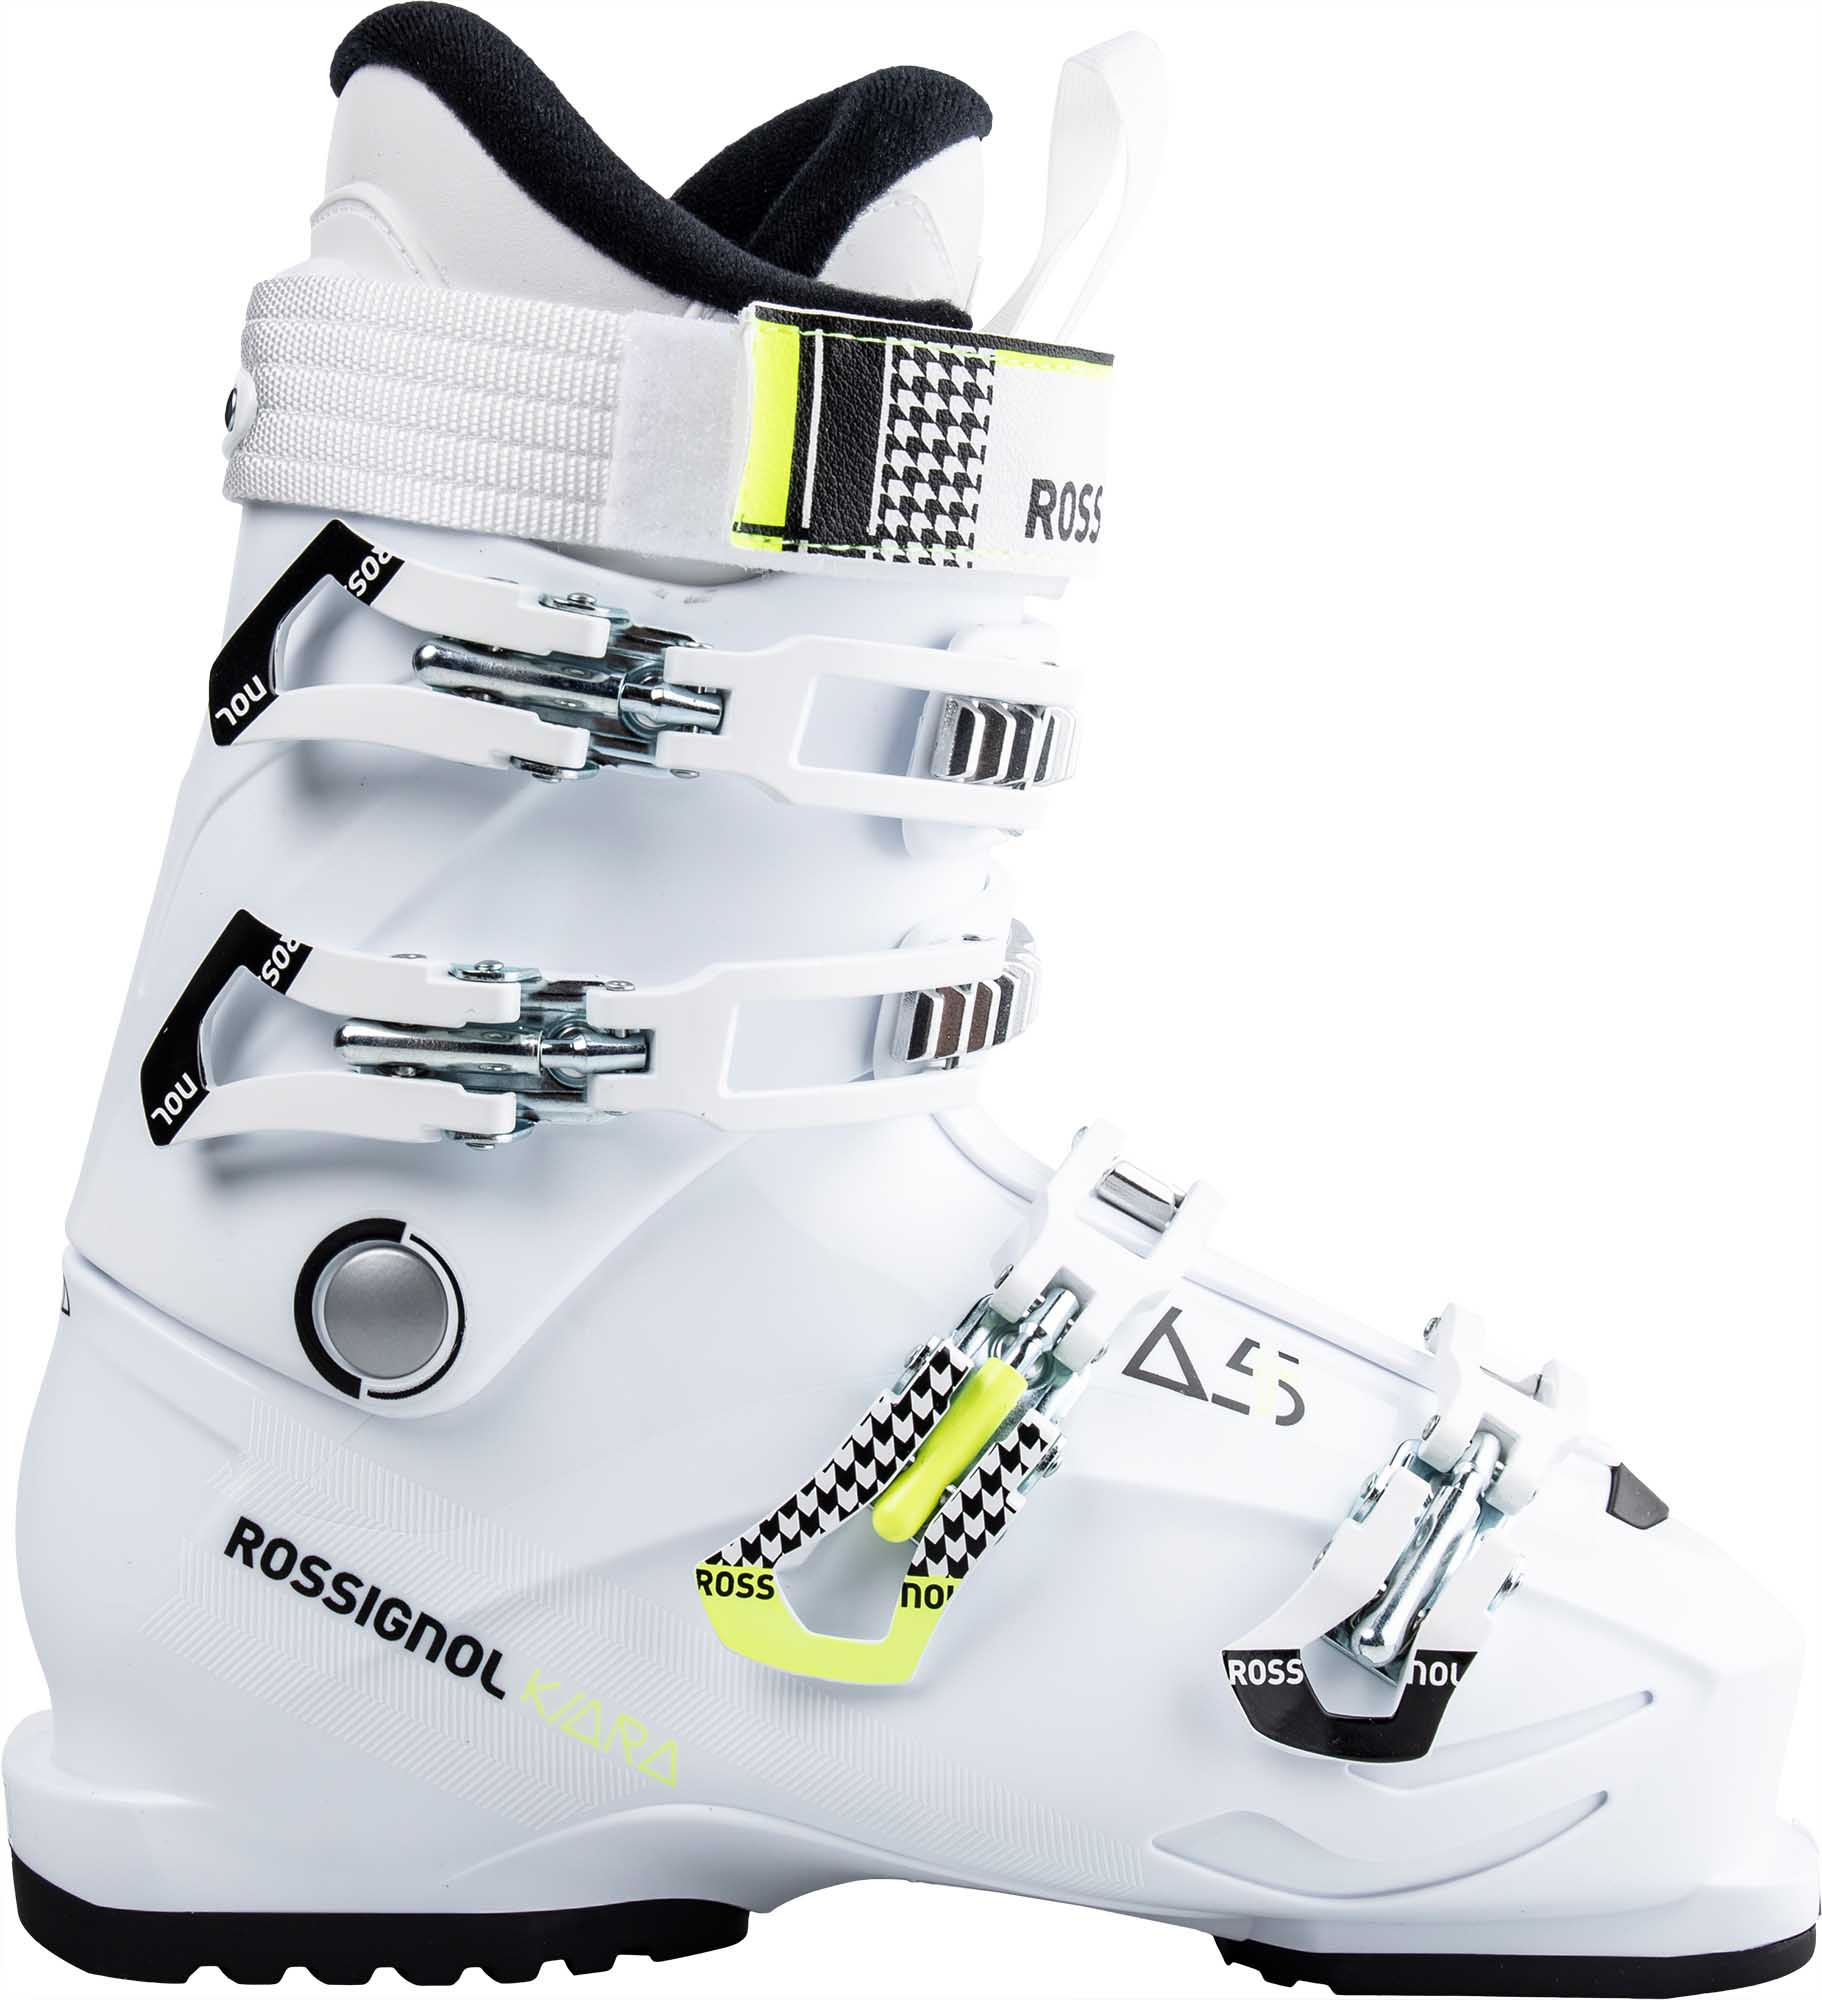 Women’s ski boots